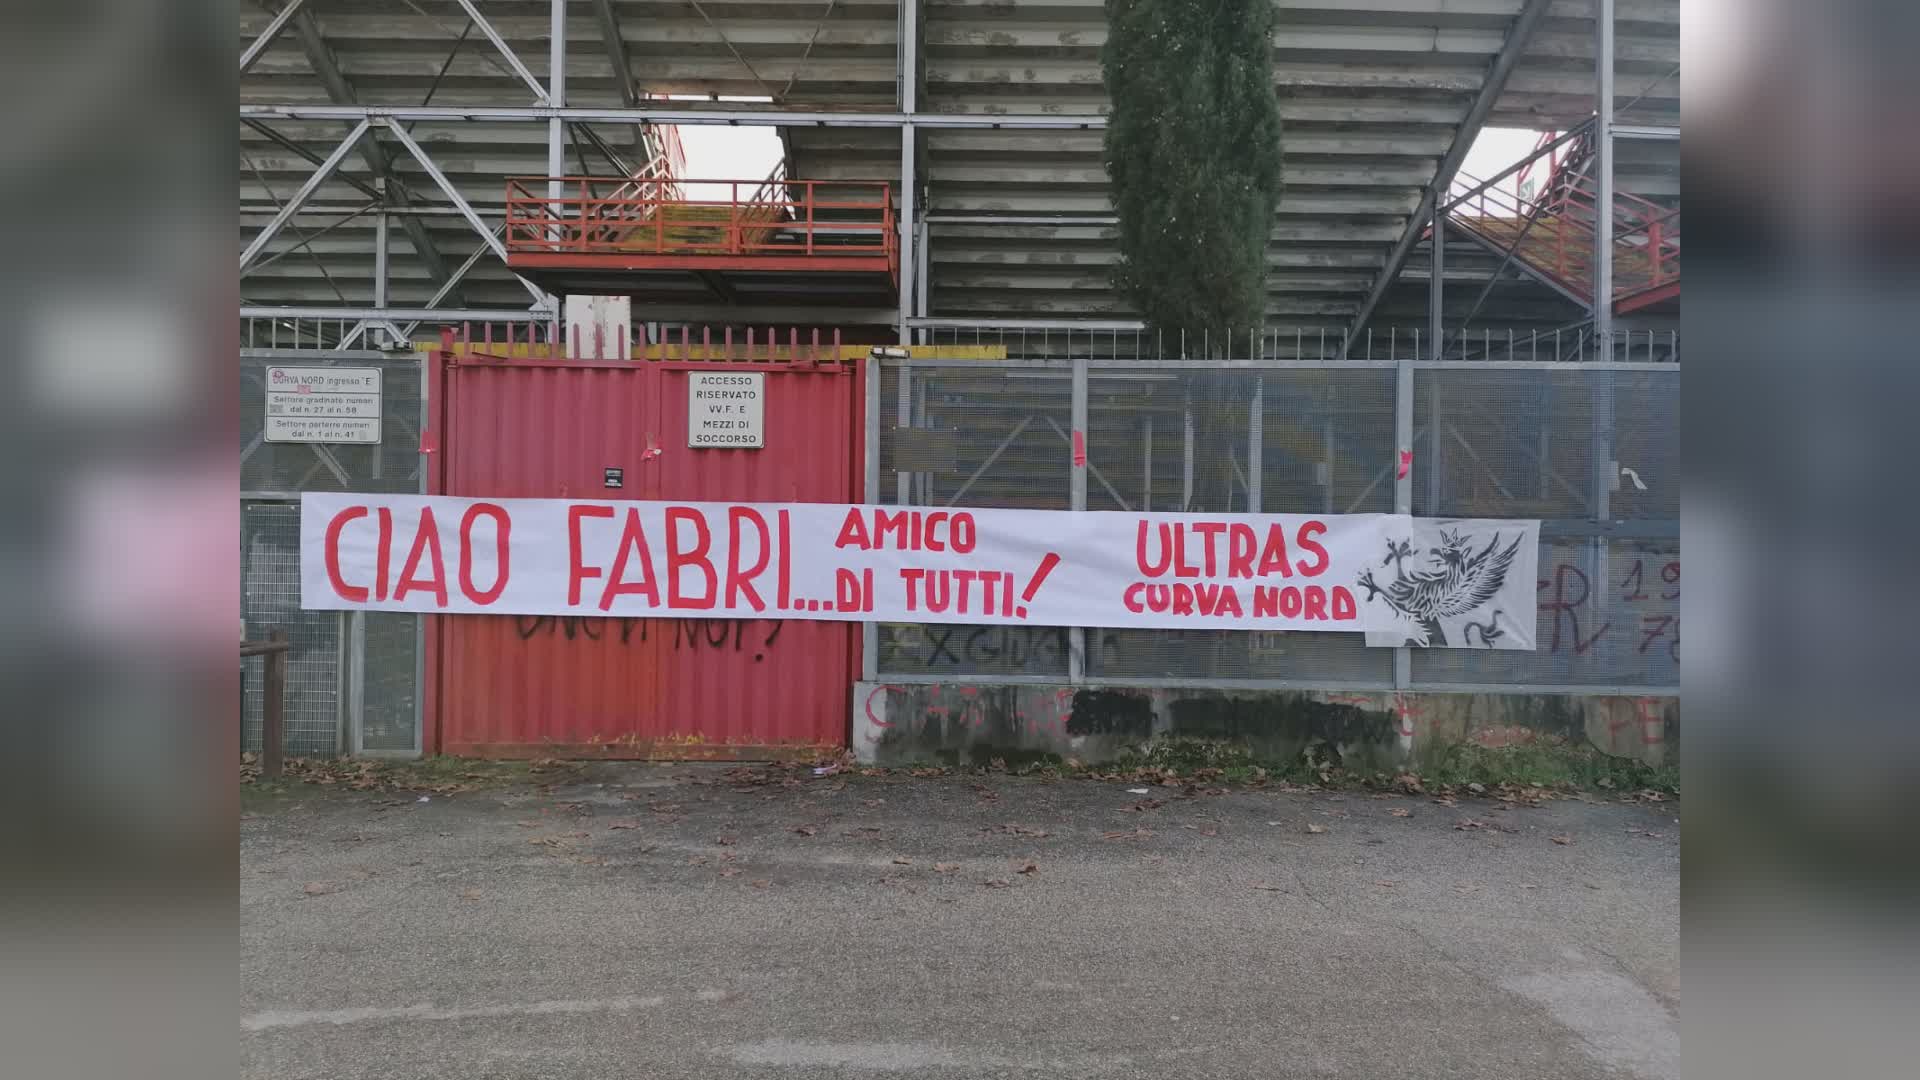 Ciao Fabri, la Curva Nord "saluta" Fabrizio Palazzoni